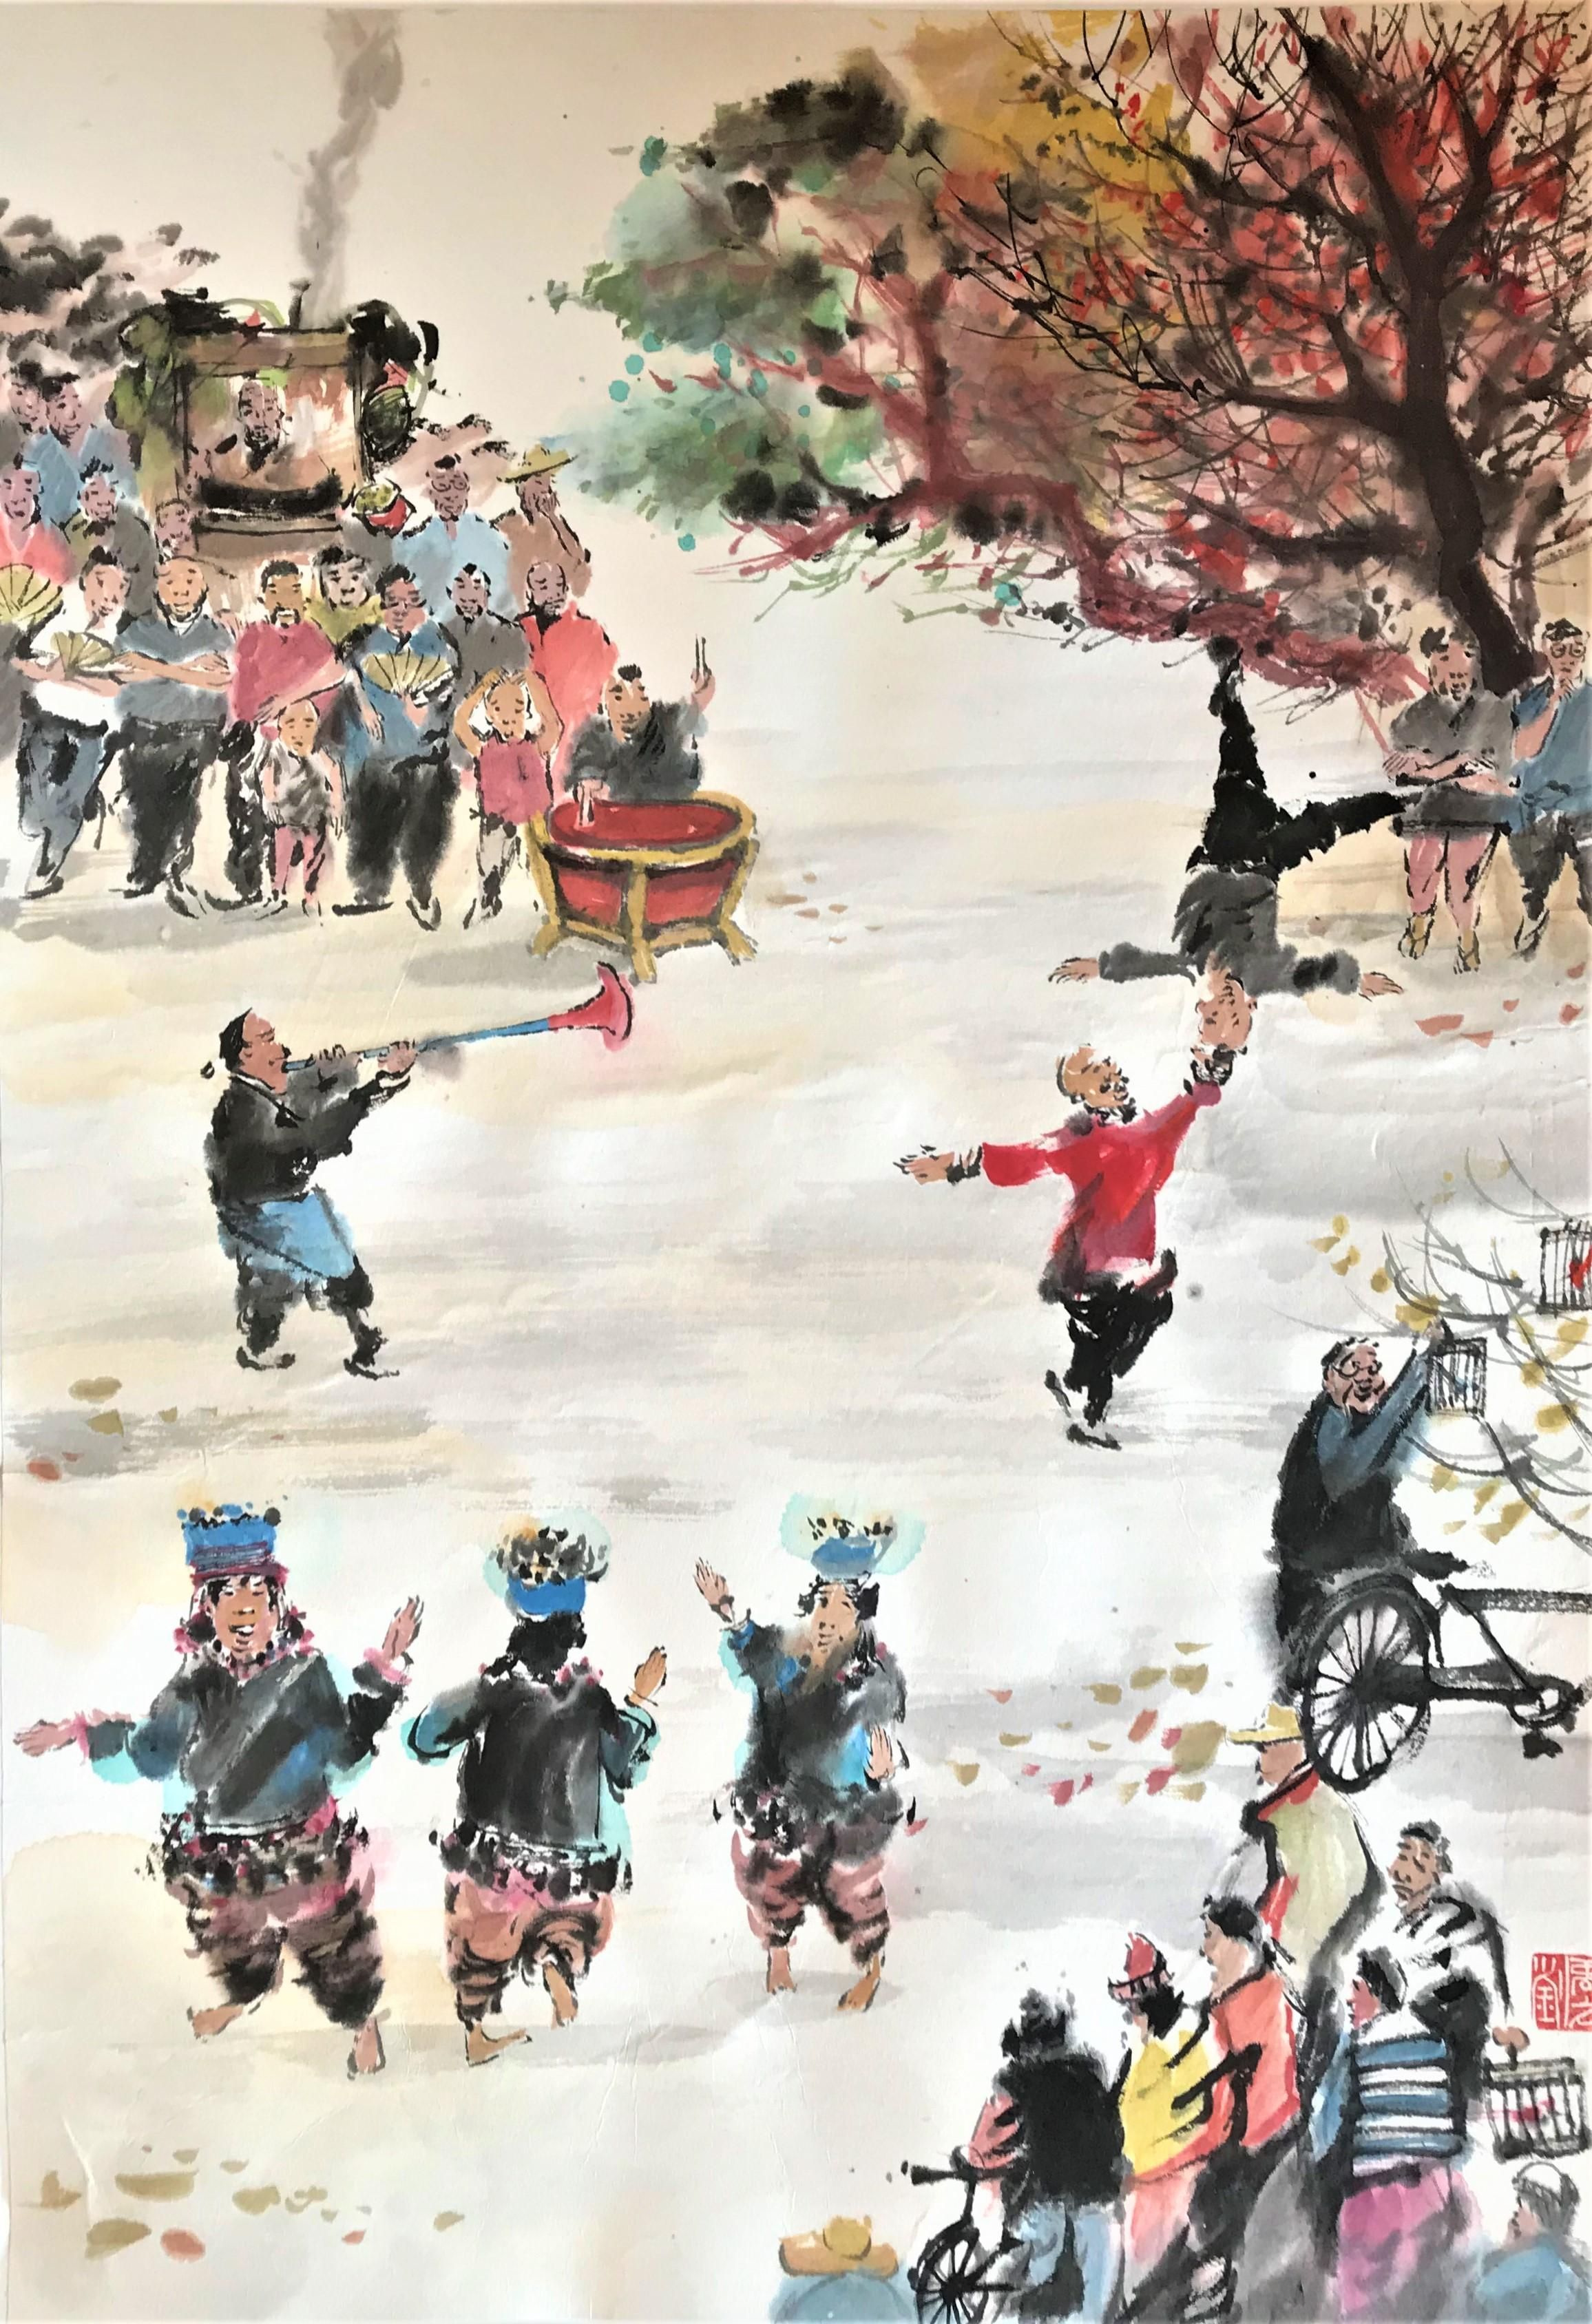 Джи Лау Юоу. 11 лет. "Традиционный китайский уличный театр". г. Гонконг. Китай